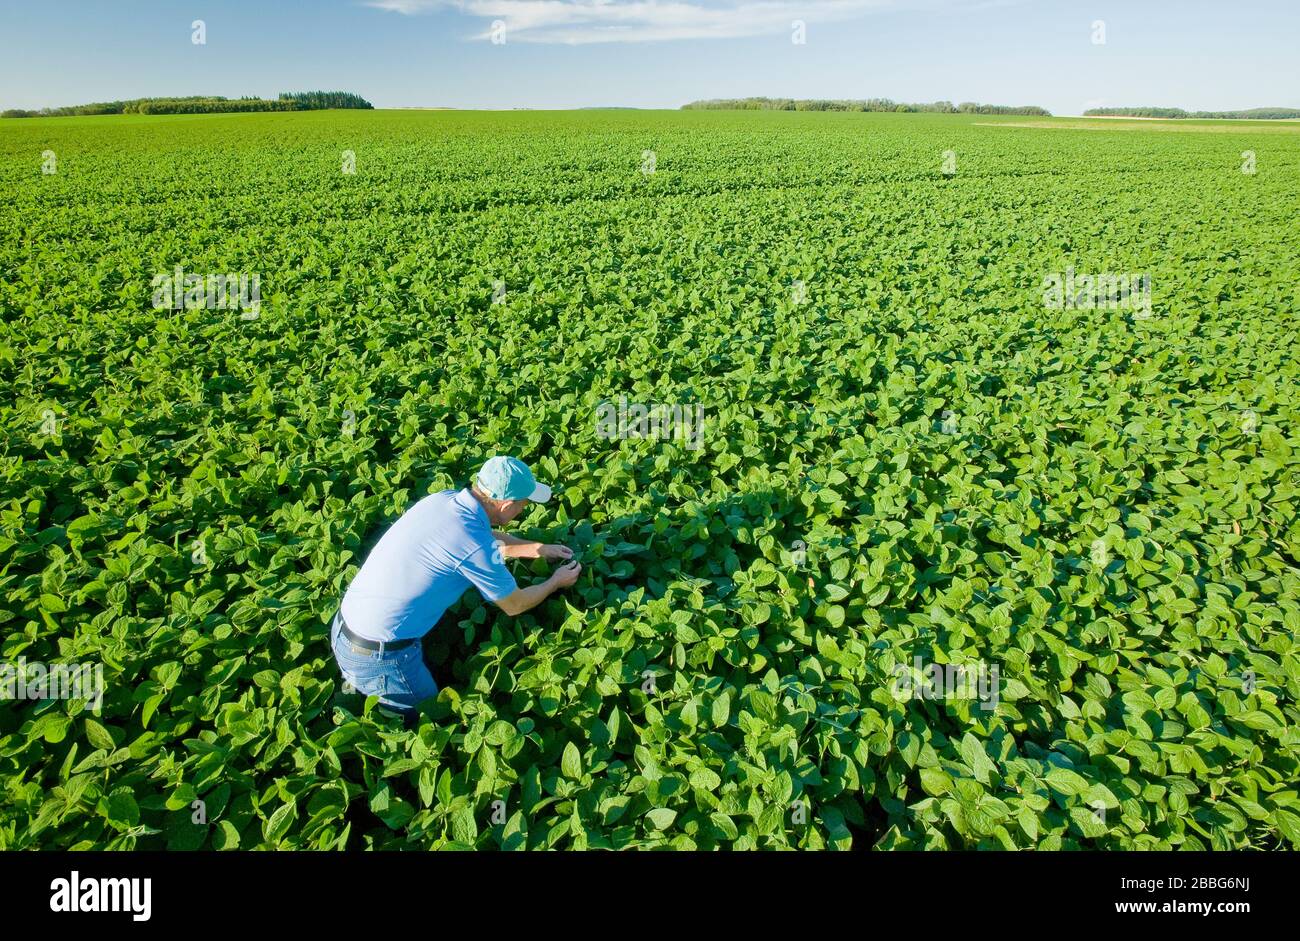 Un agricultor examina las plantas de soja de crecimiento medio en un campo que se extiende hasta el horizonte, Tiger Hills, Manitoba, Canadá Foto de stock